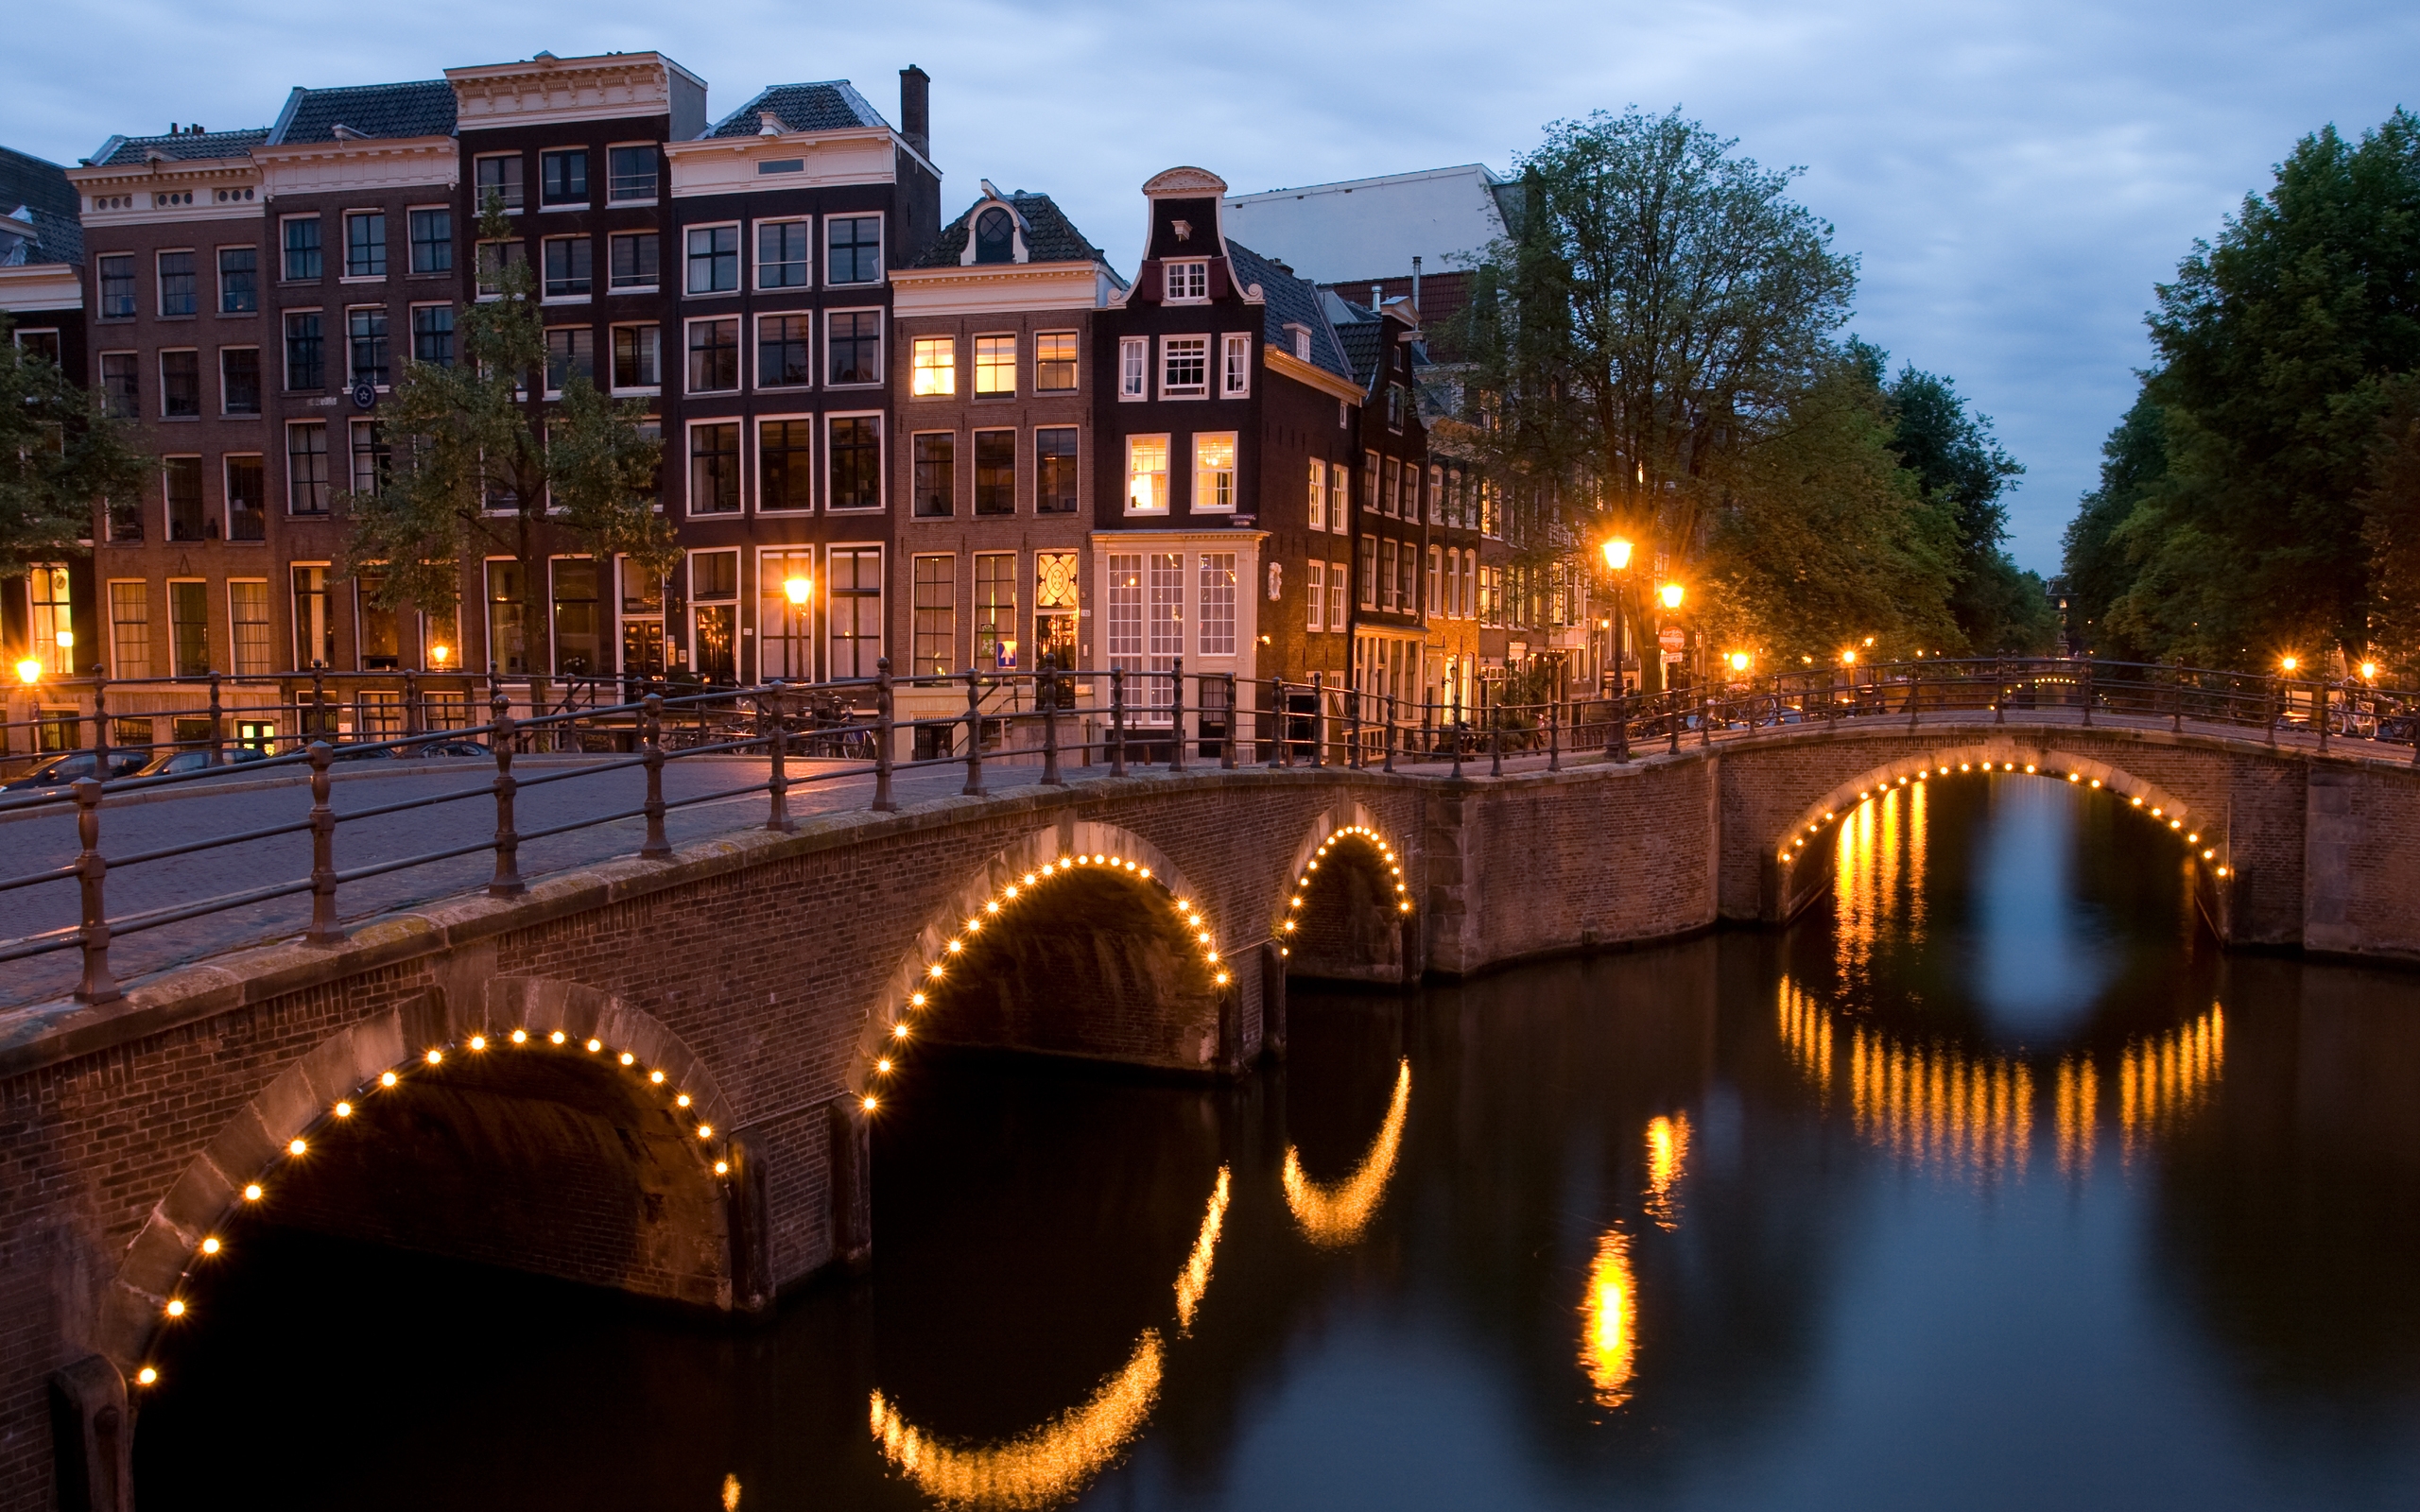 Reguliersgracht Corner Amsterdam for 2560 x 1600 widescreen resolution